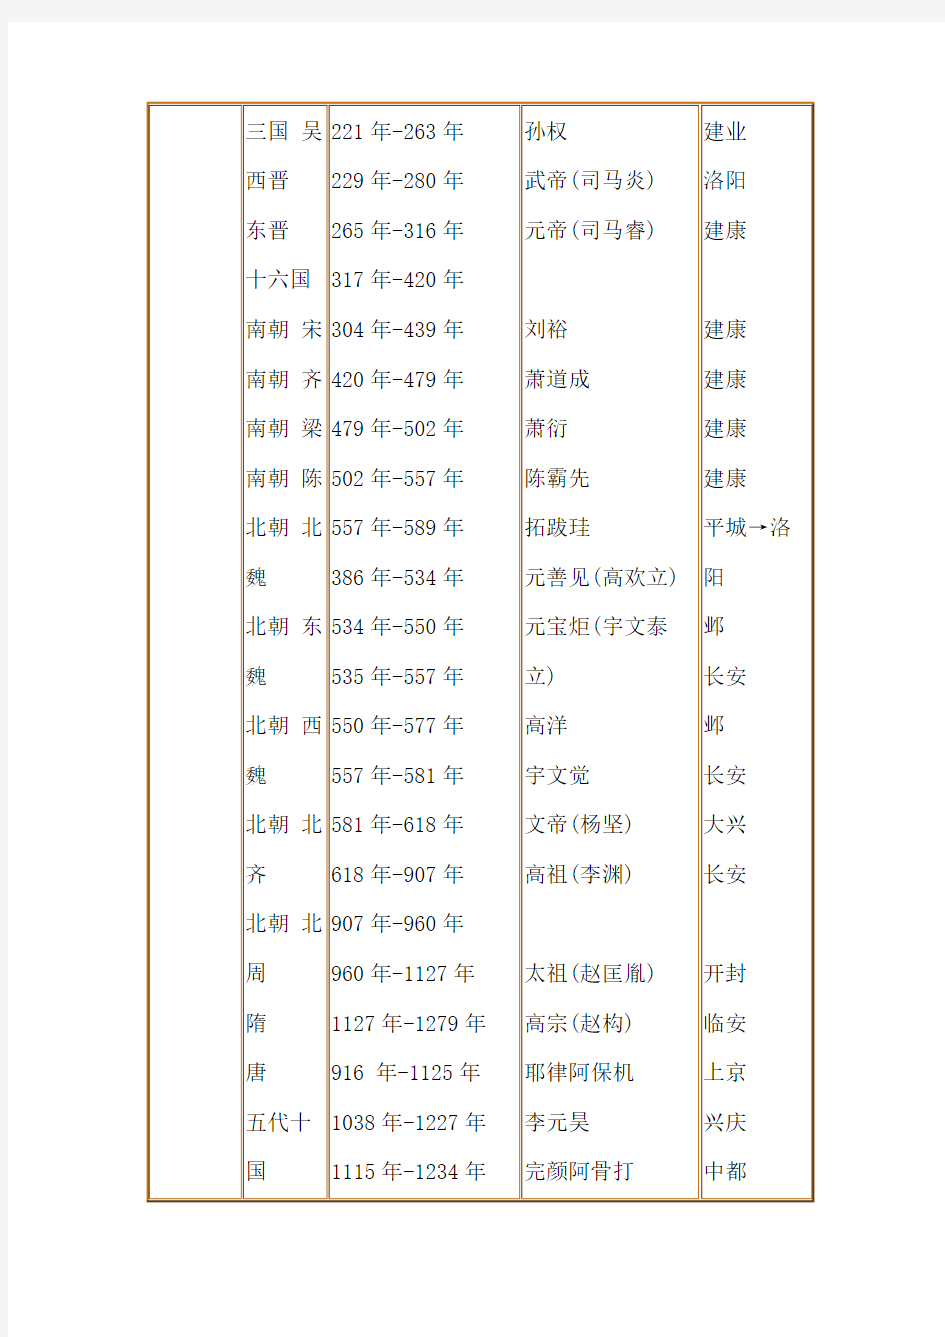 中国历史纪年表